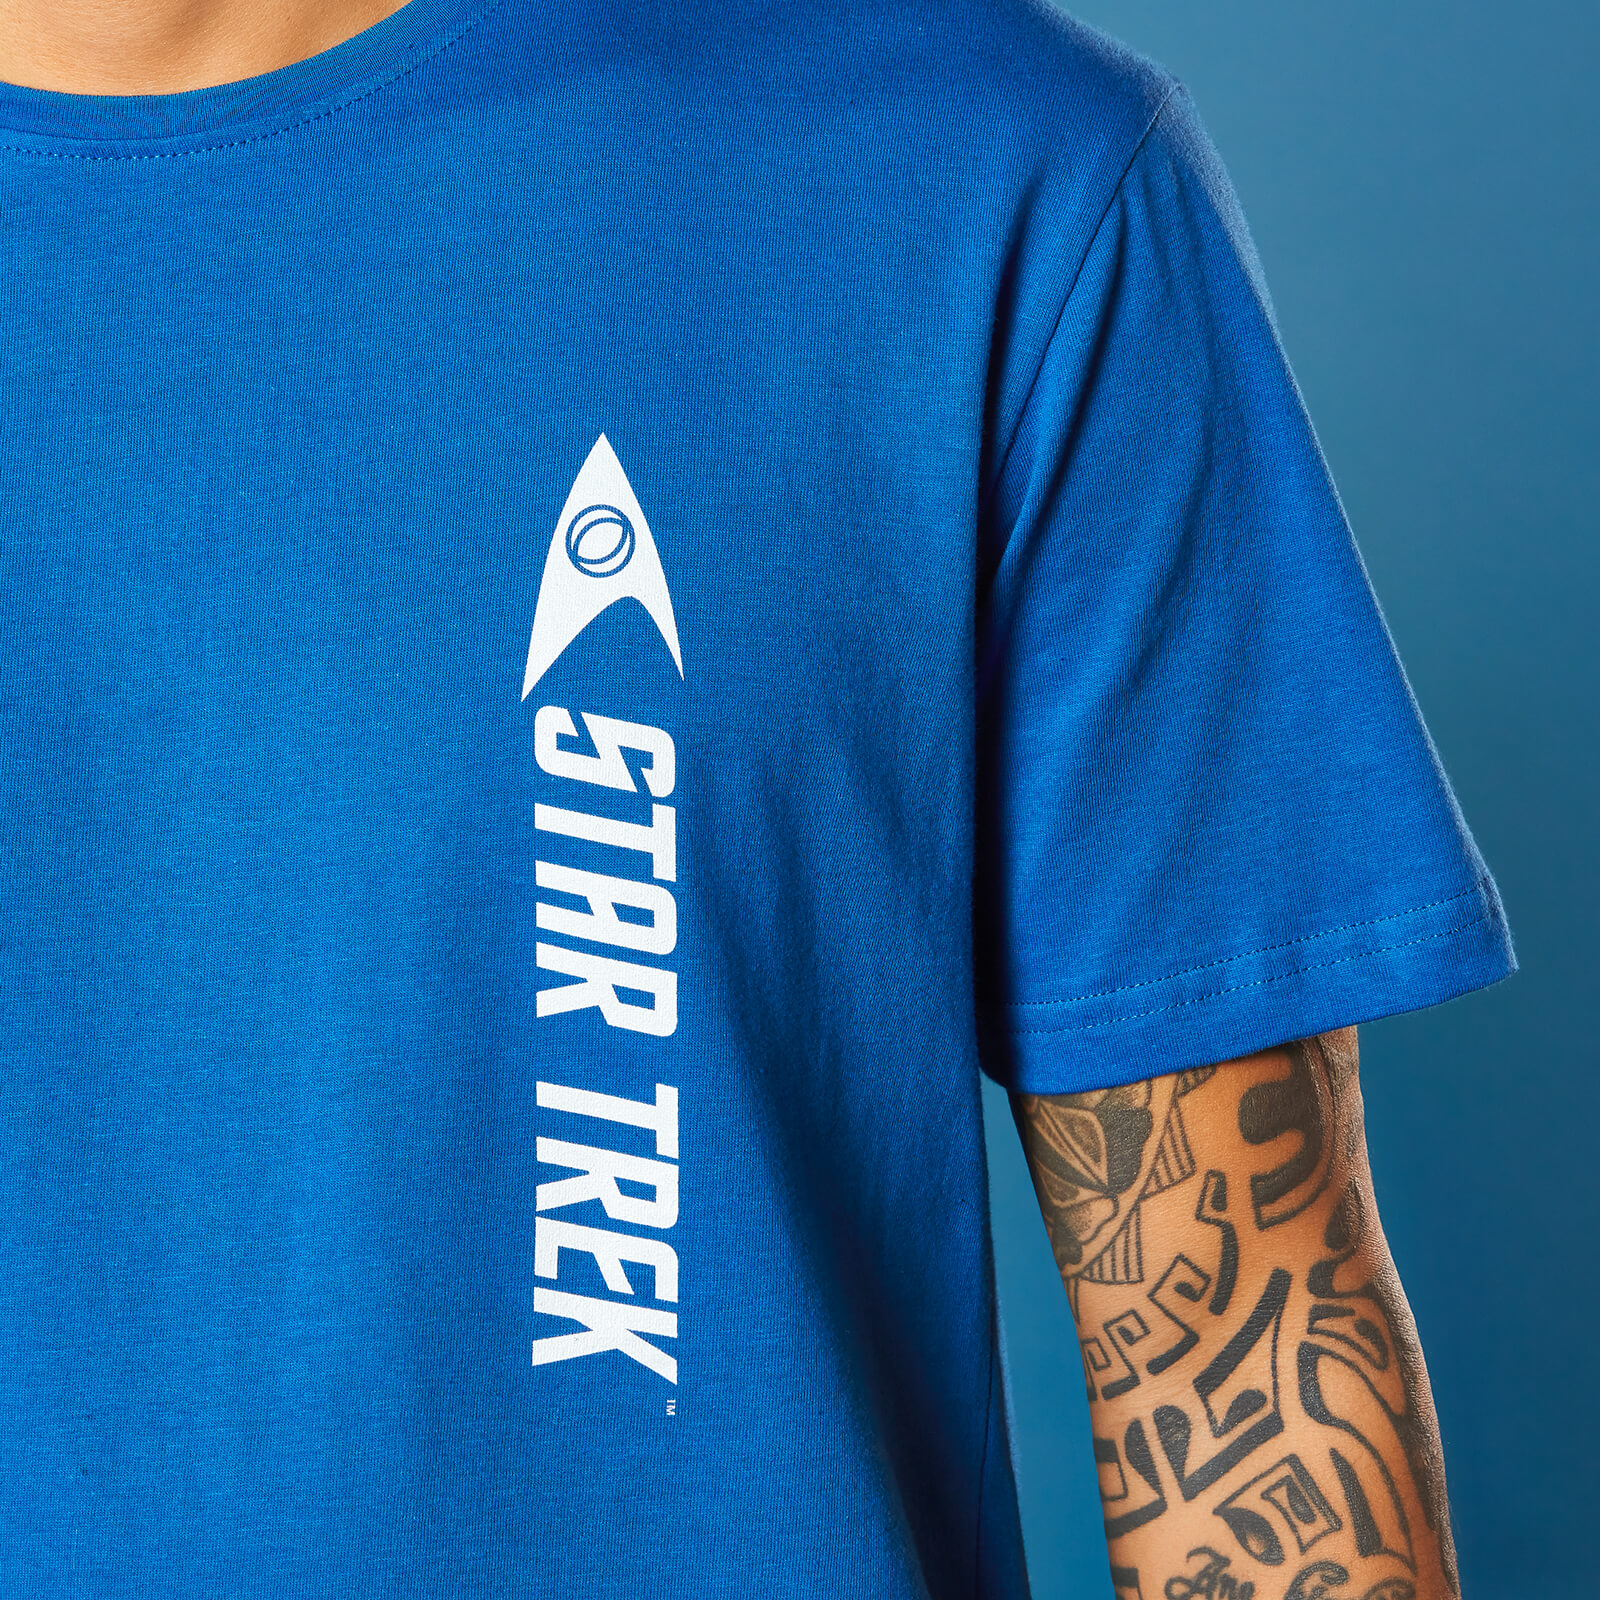 Science Star Trek T-Shirt - Royal Blue - M - royal blue